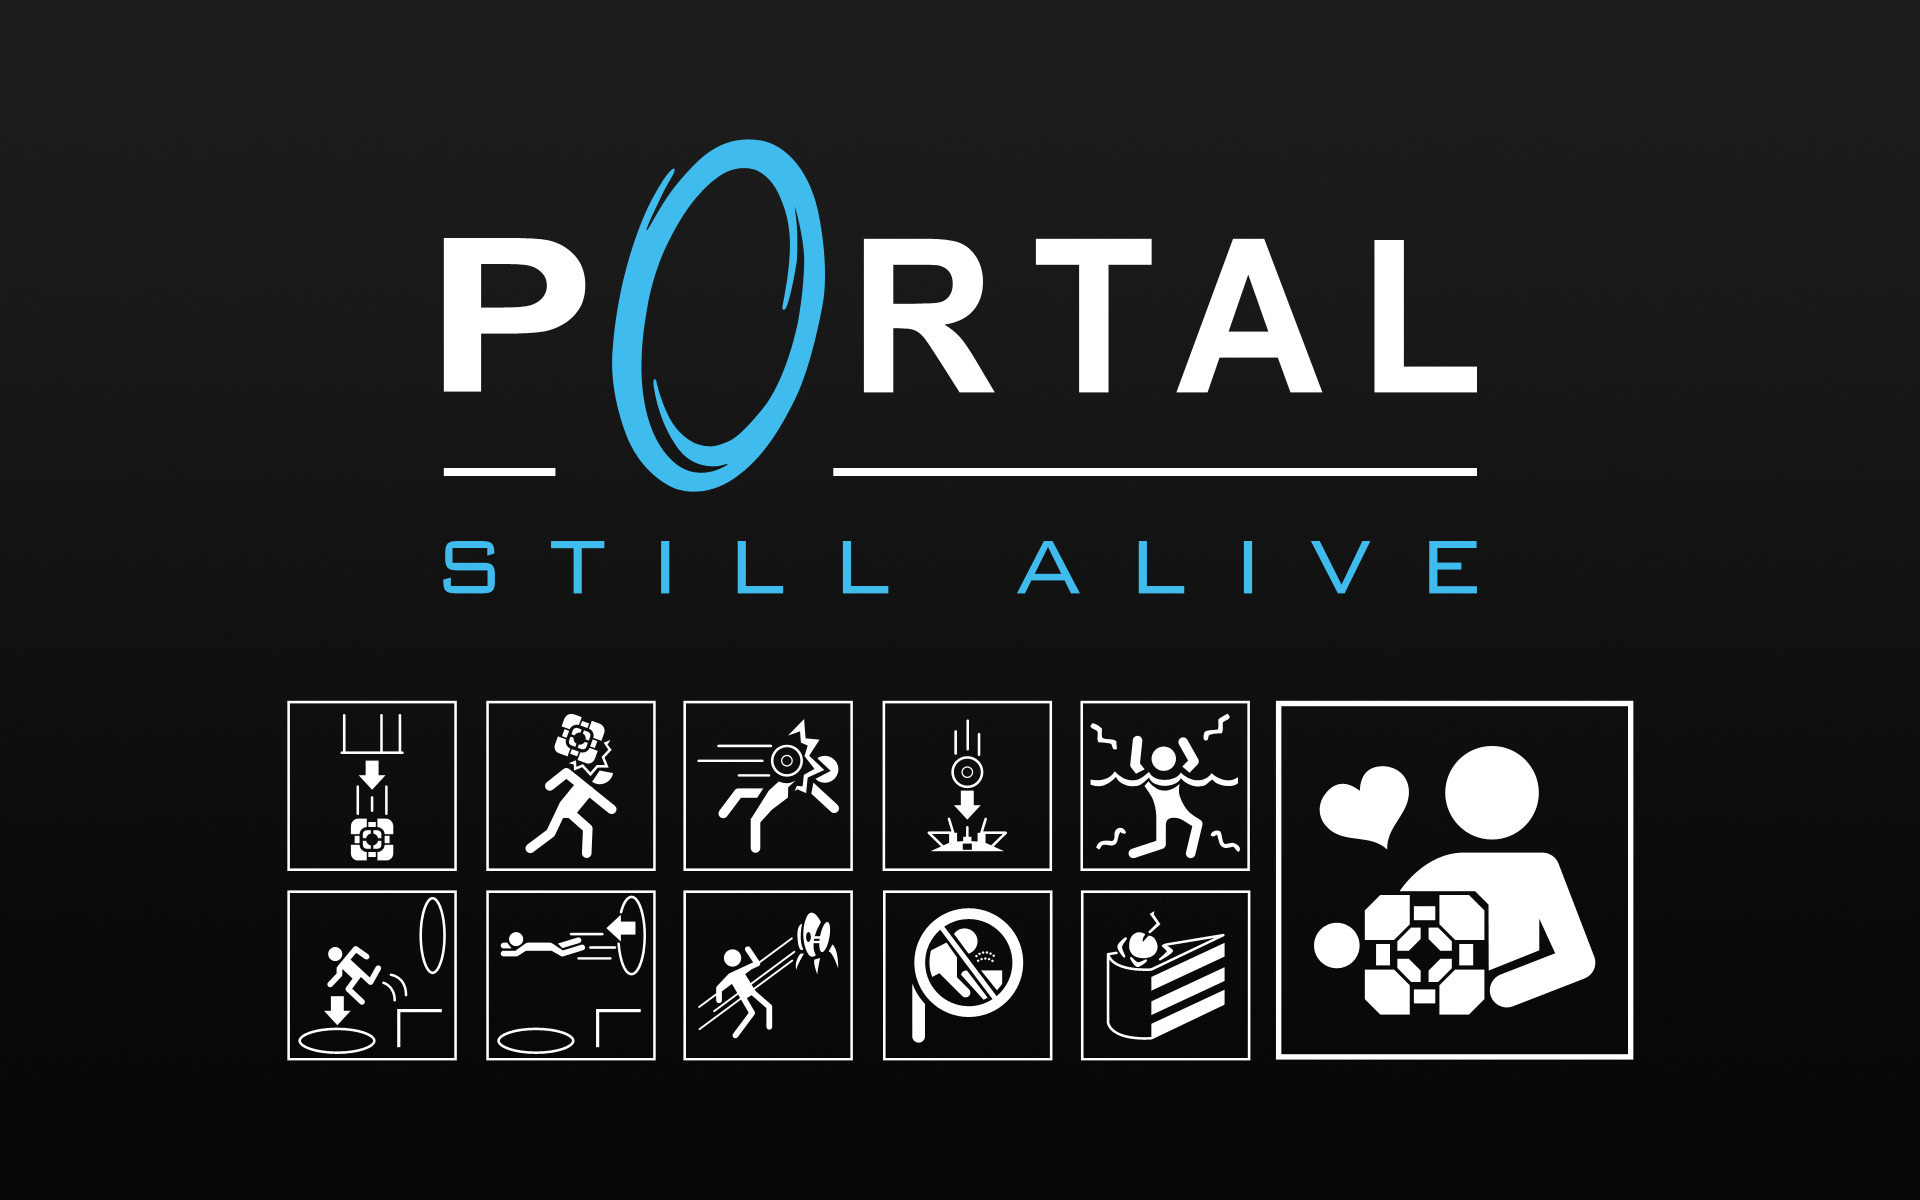 Portal and portal 2 for mac фото 100